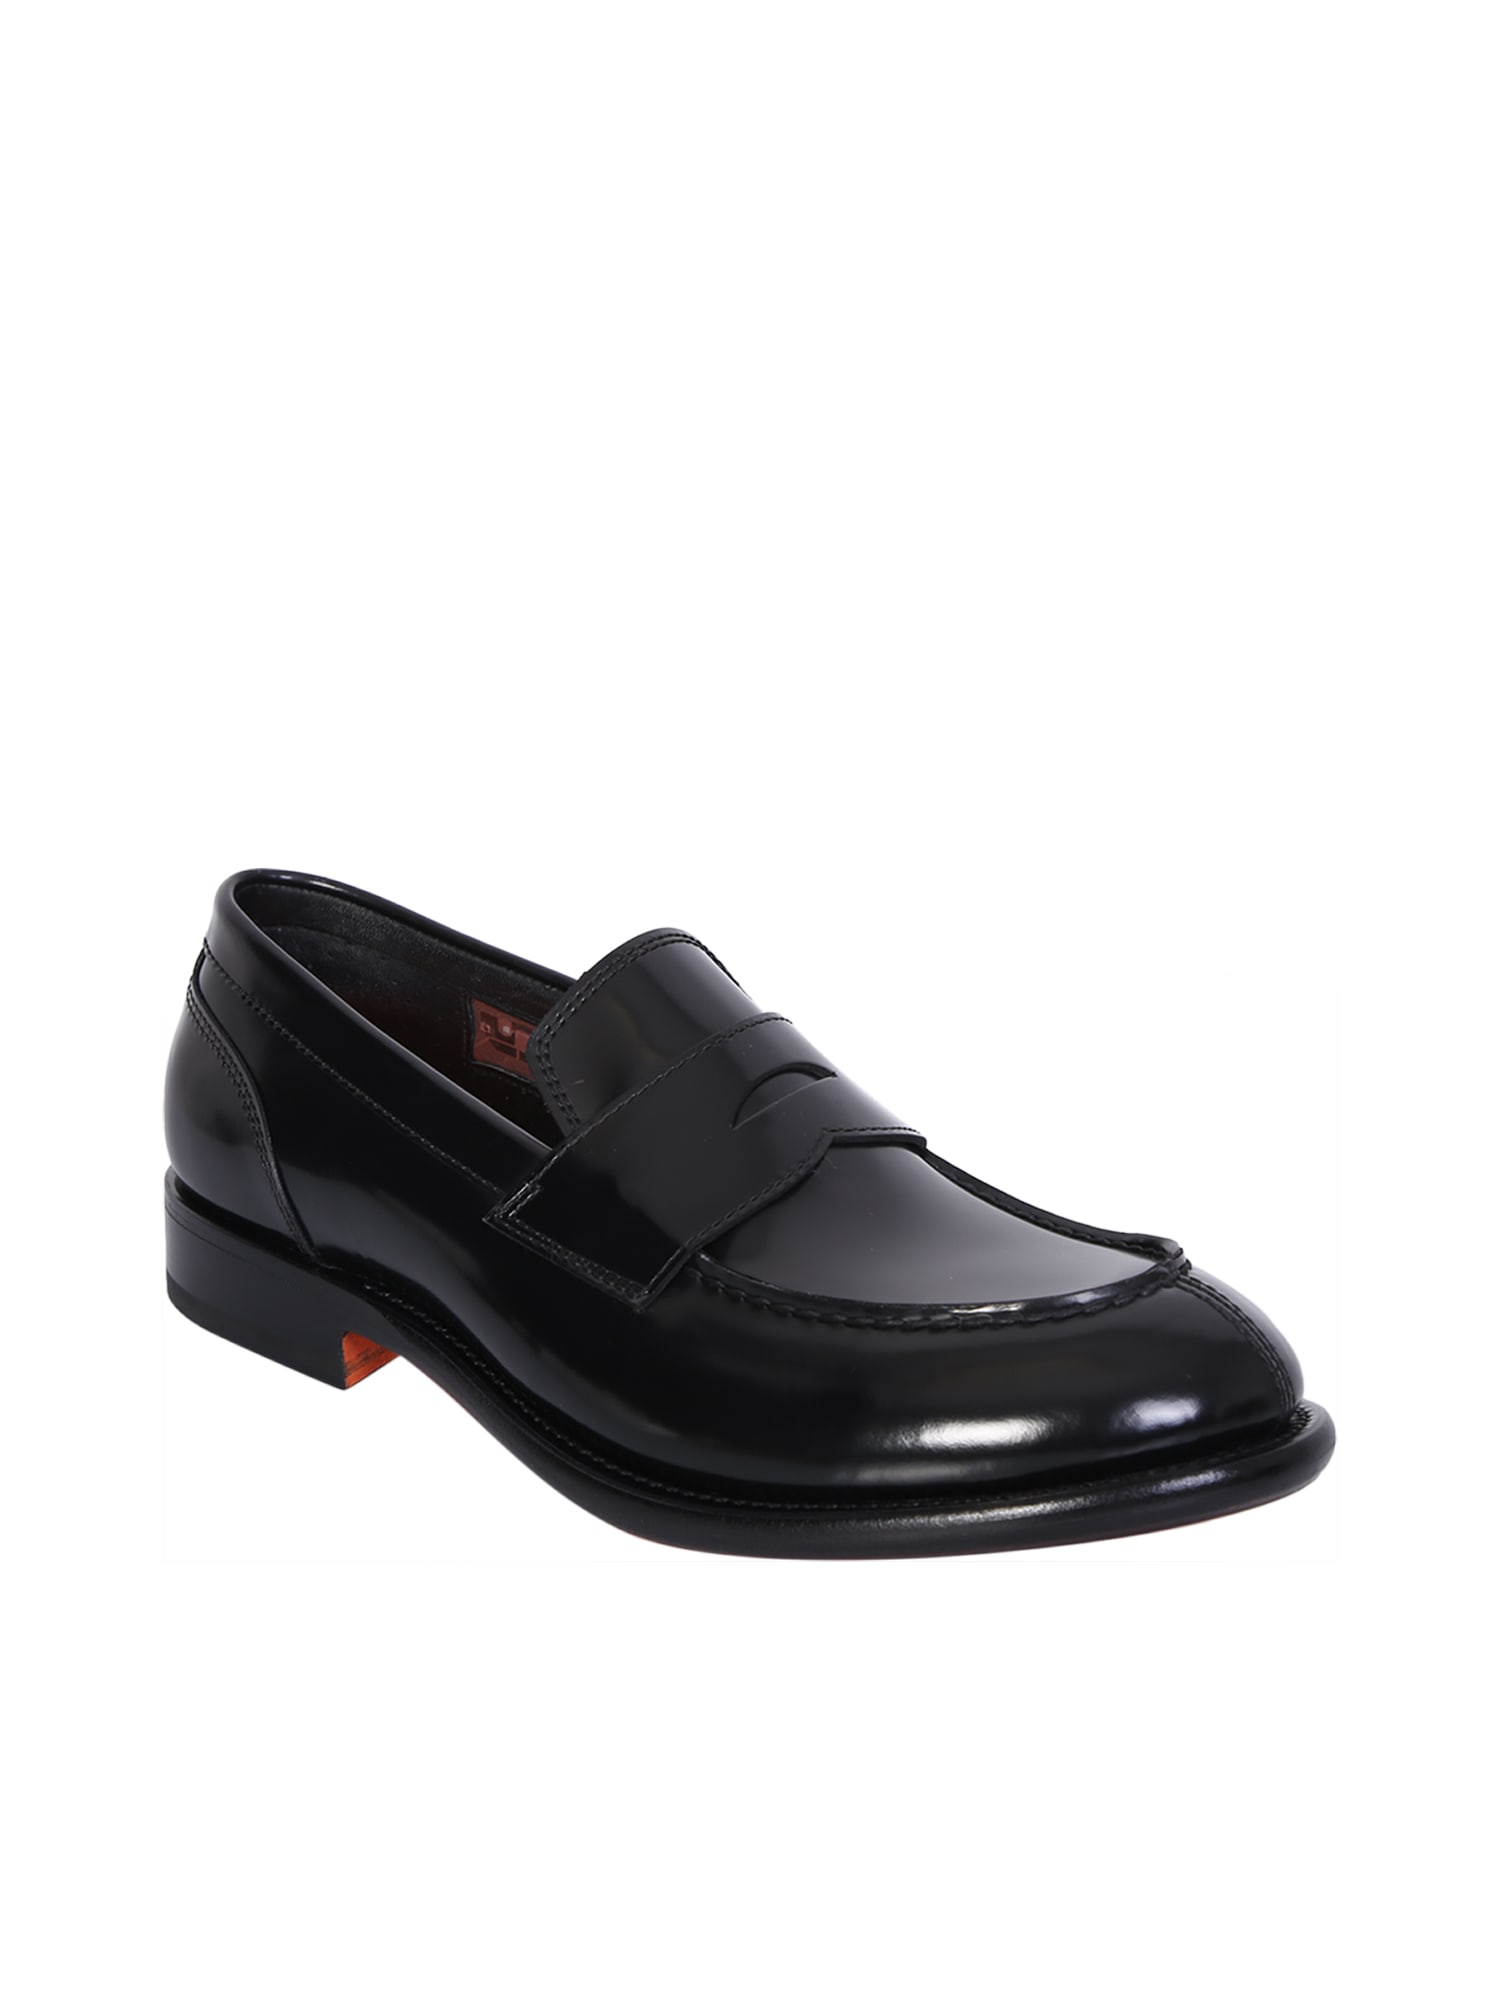 Shop Santoni Black Leather Loafer